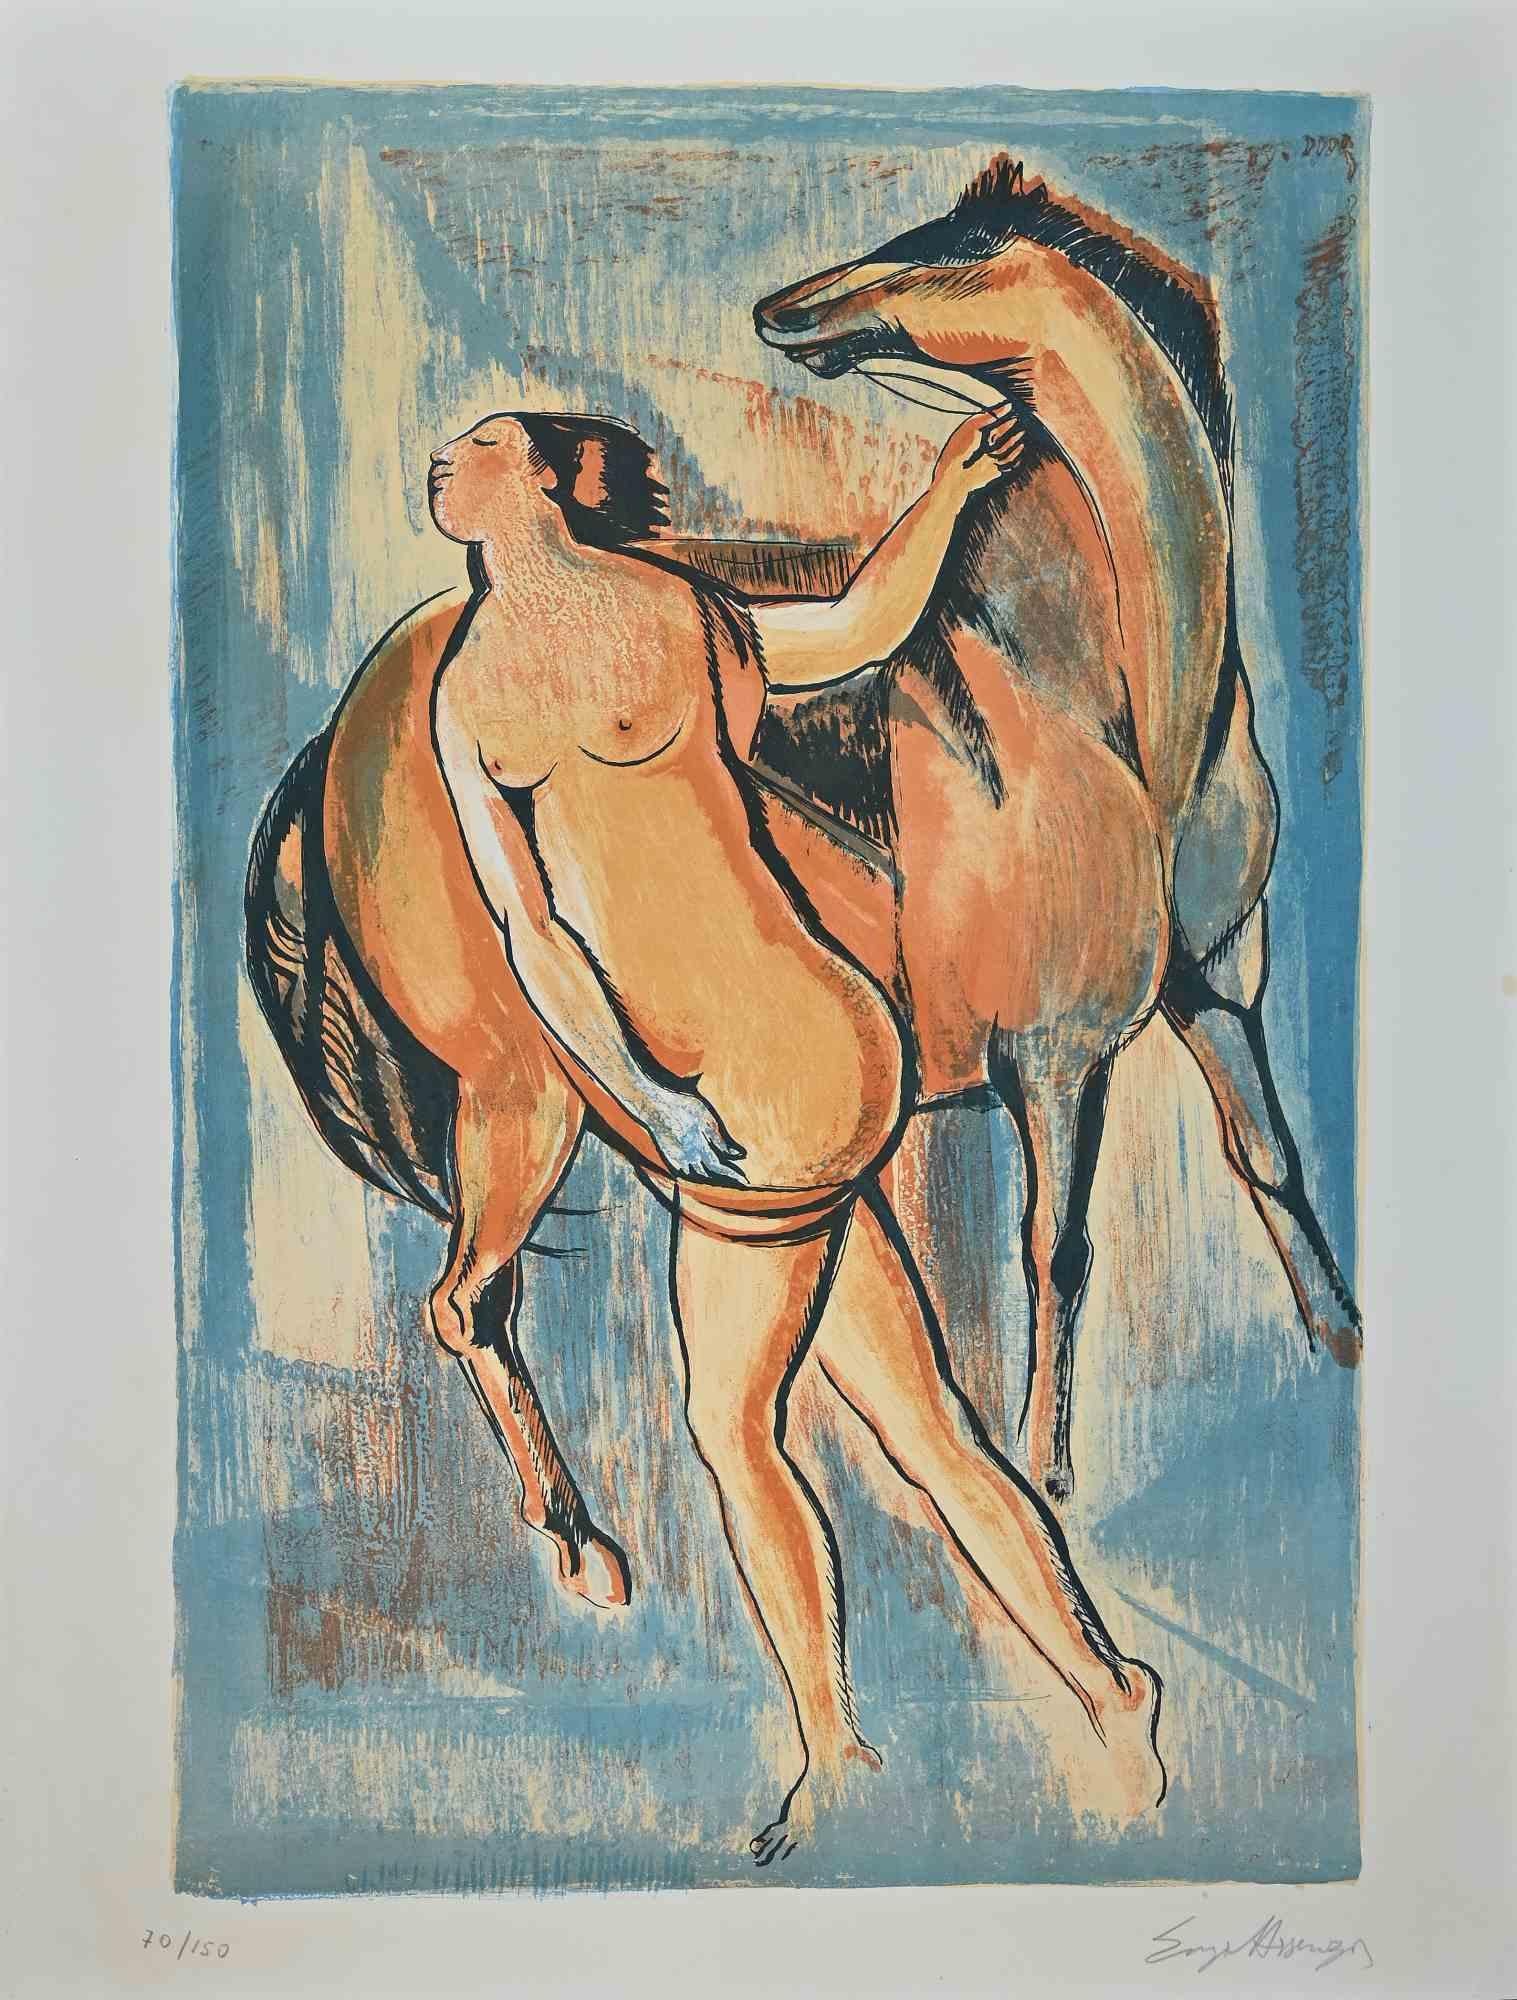 Frau mit Pferd ist ein Originalkunstwerk, das von  Enzo Assenza.

Originaldruck in Ätztechnik.

Vom Künstler in der rechten unteren Ecke mit Bleistift handsigniert.

Nummerierte Auflage von 150 Drucken.

Sehr guter Zustand. 